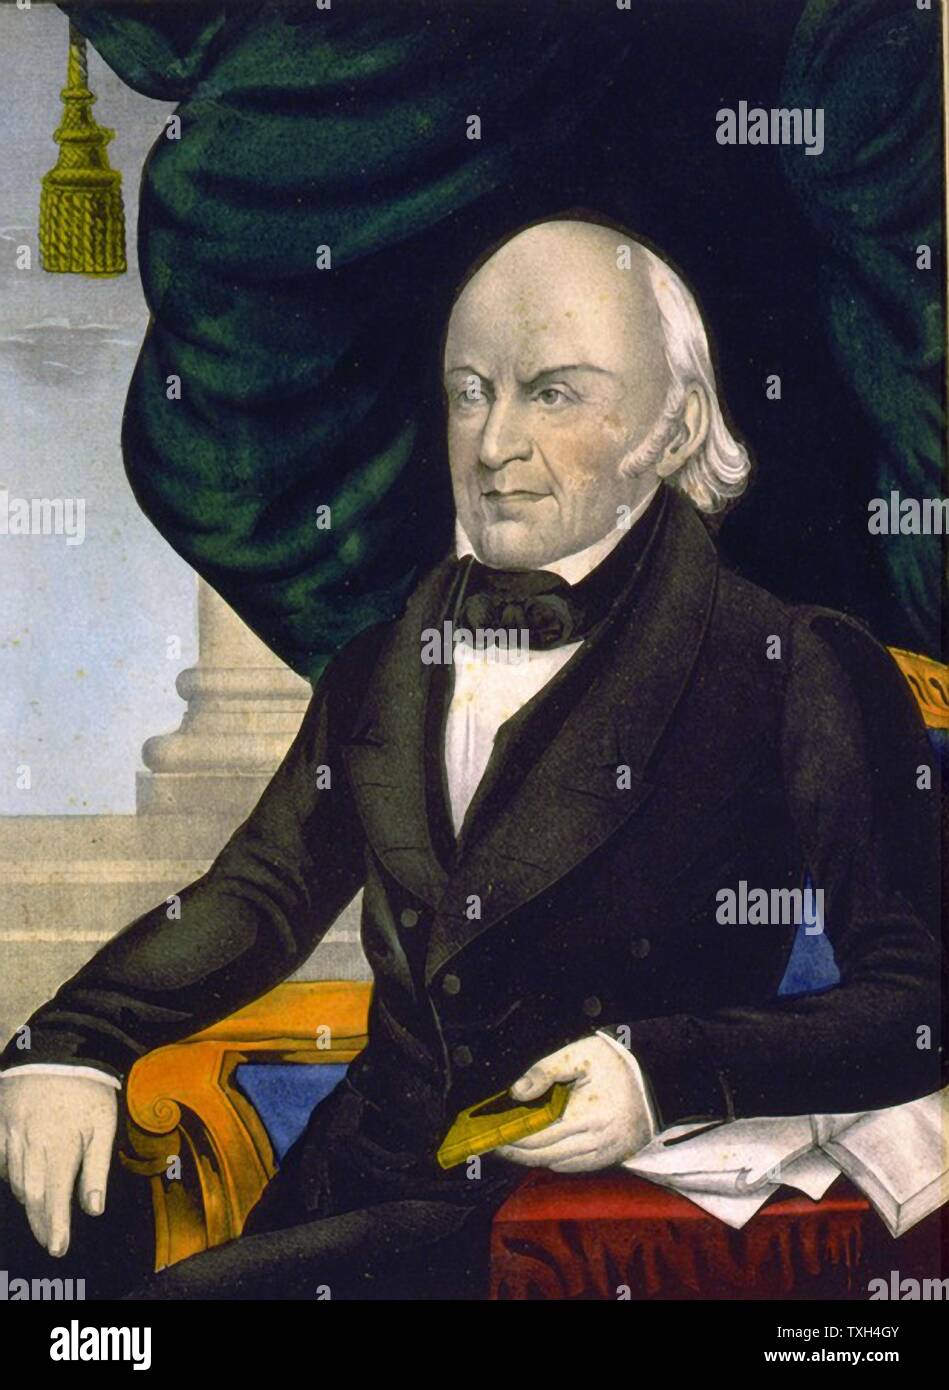 John Quincy Adams, US-amerikanischer Diplomat und der sechste Präsident der Vereinigten Staaten von Amerika 1825-1829. Adams sitzt ein kleines Buch Litograph Stockfoto